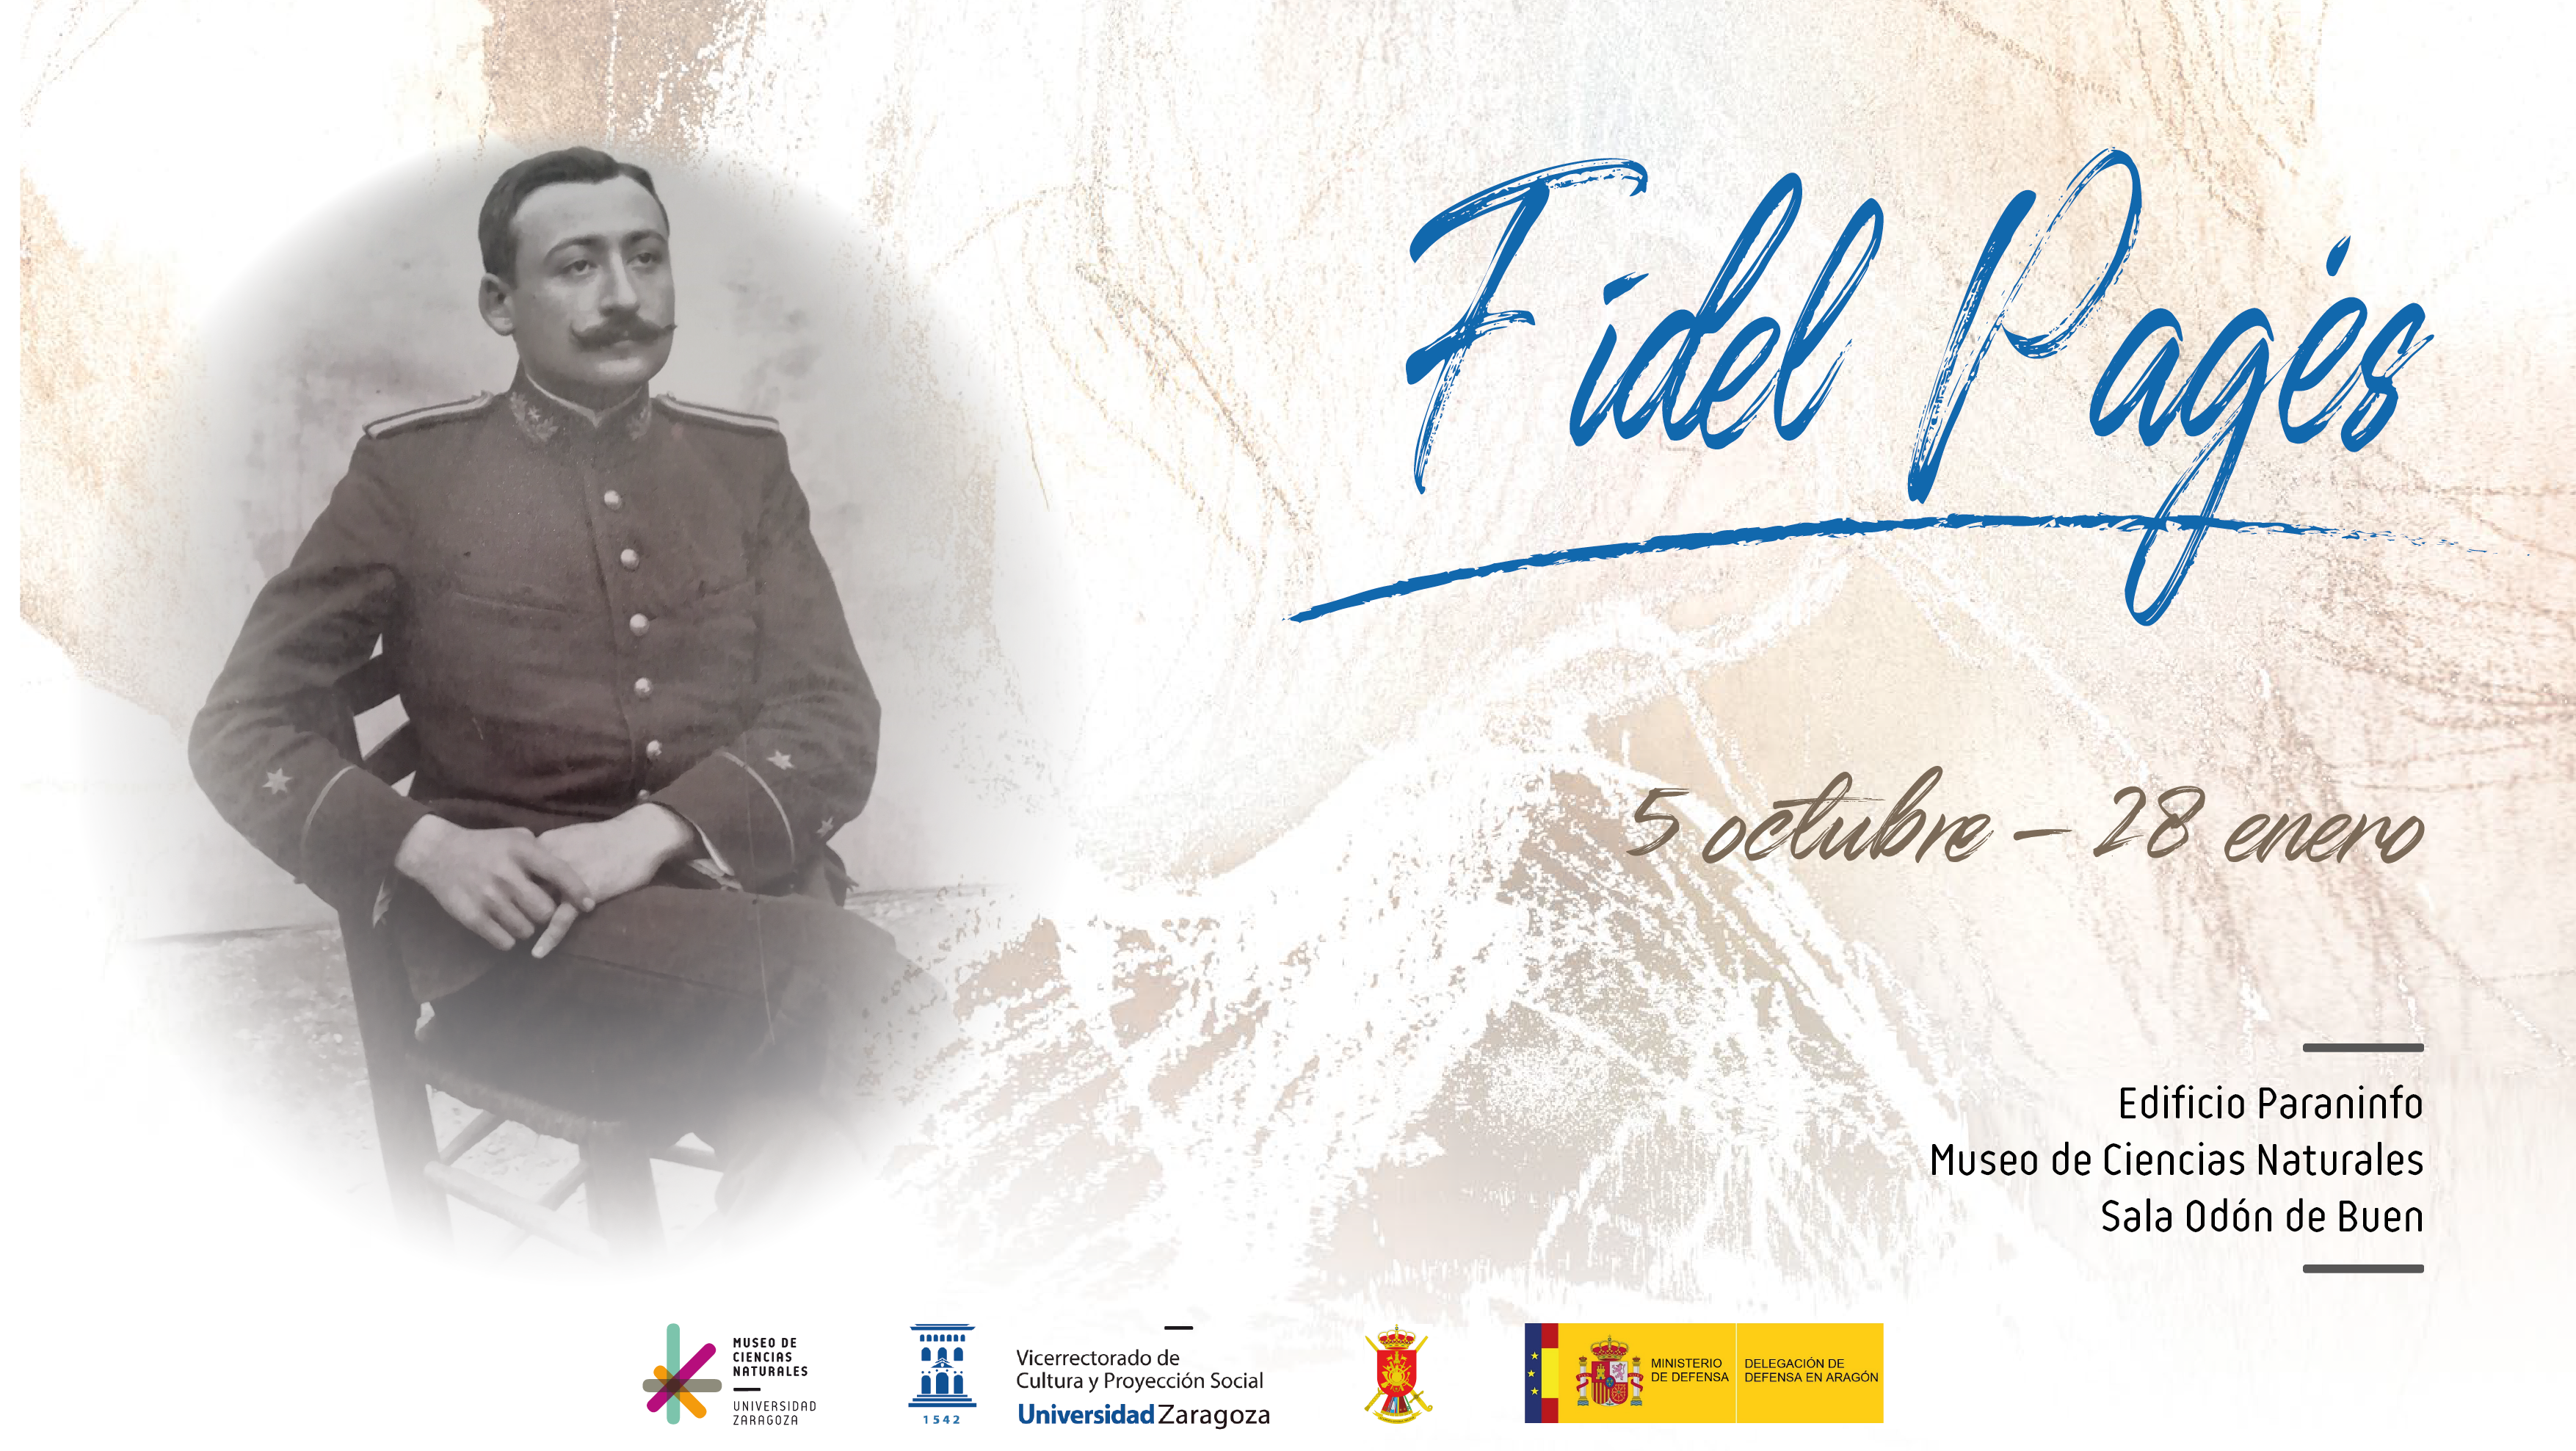 Exposición “Fidel Pagés”, descubridor de la anestesia epidural, llega a Zaragoza